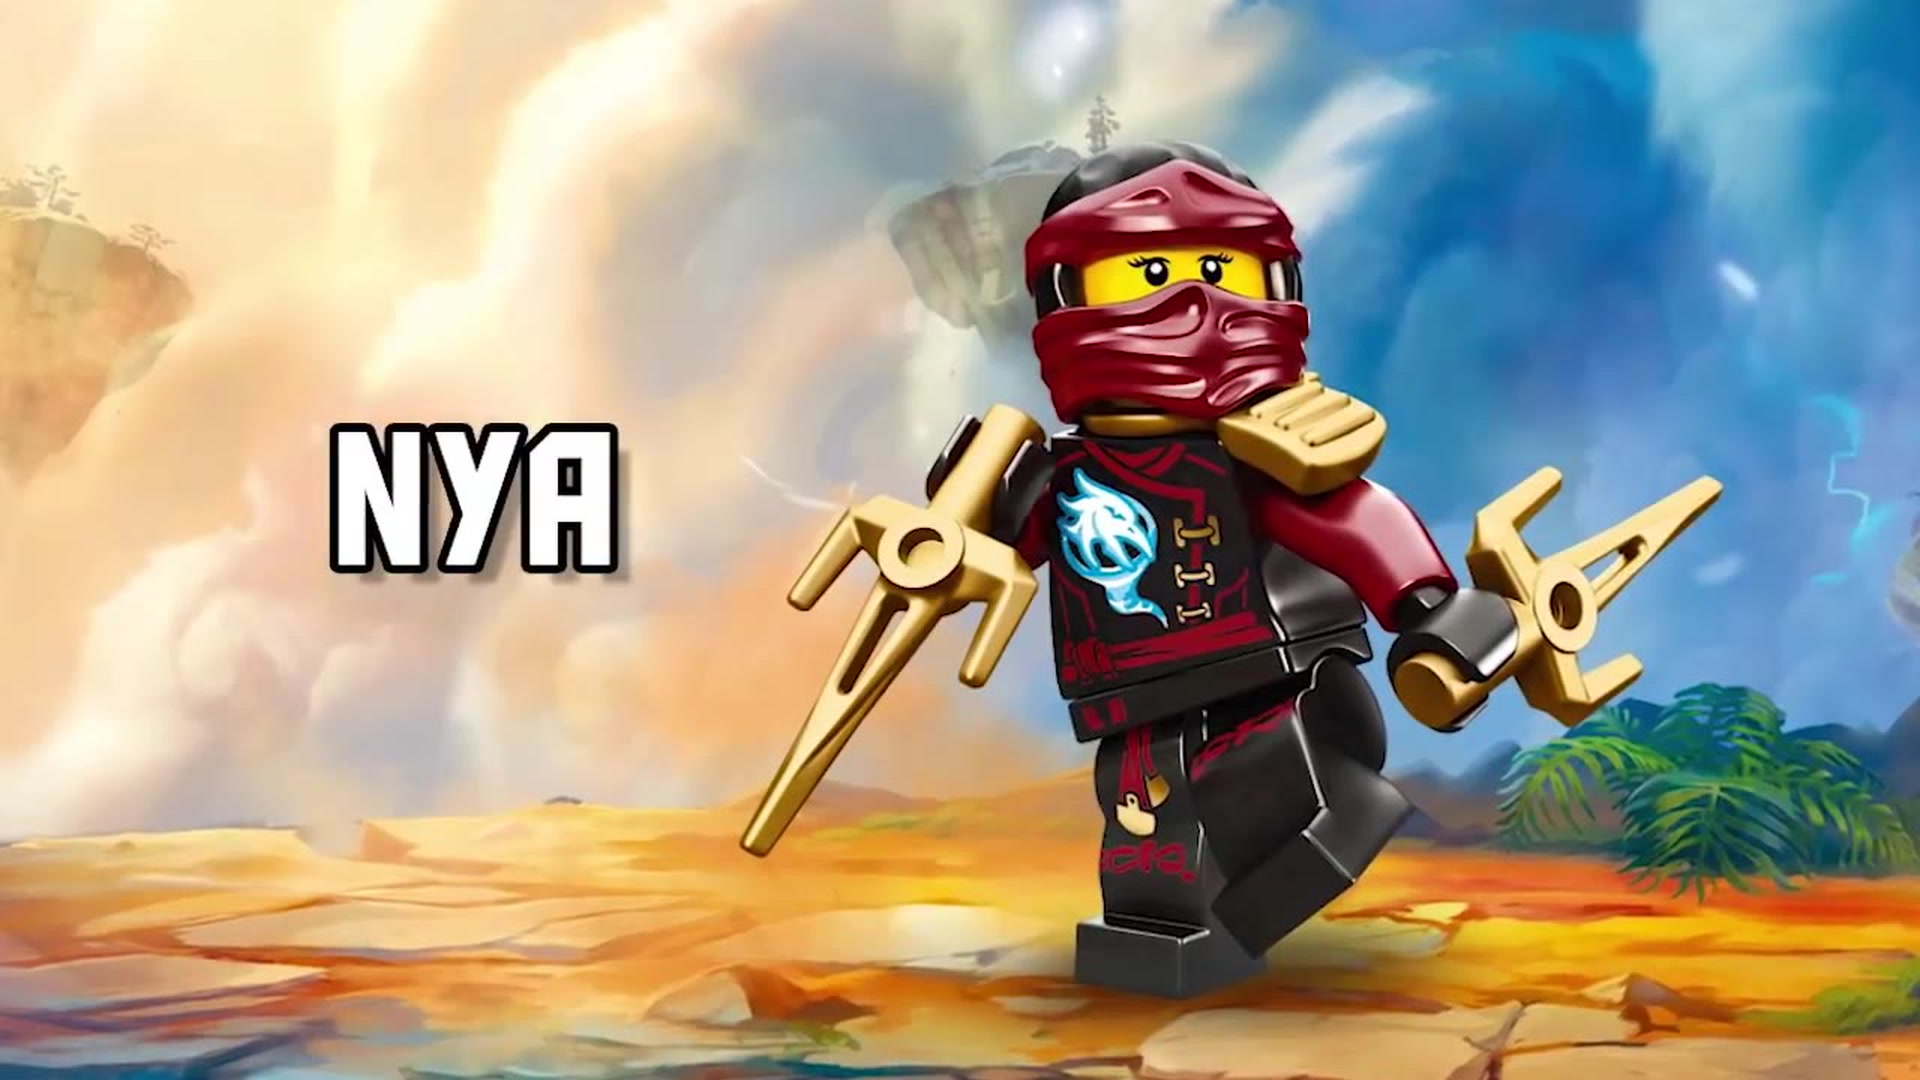 Nya mit Speer und Schwert LEGO Ninjago Neu & OVP 